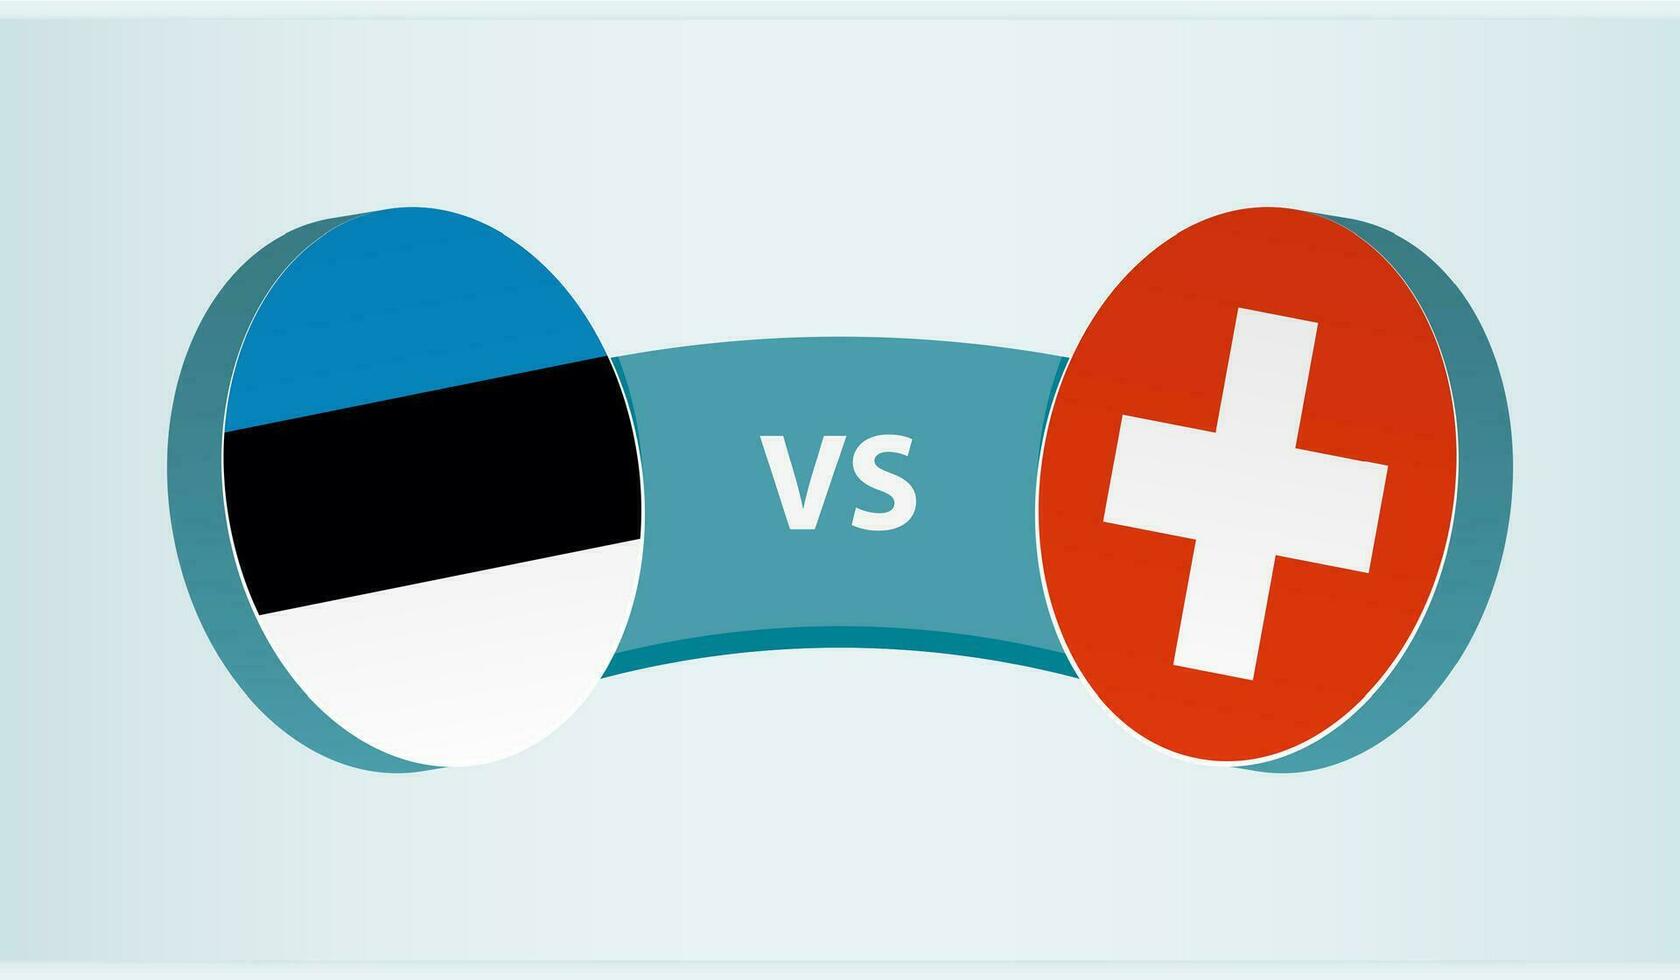 Estonia versus Switzerland, team sports competition concept. vector